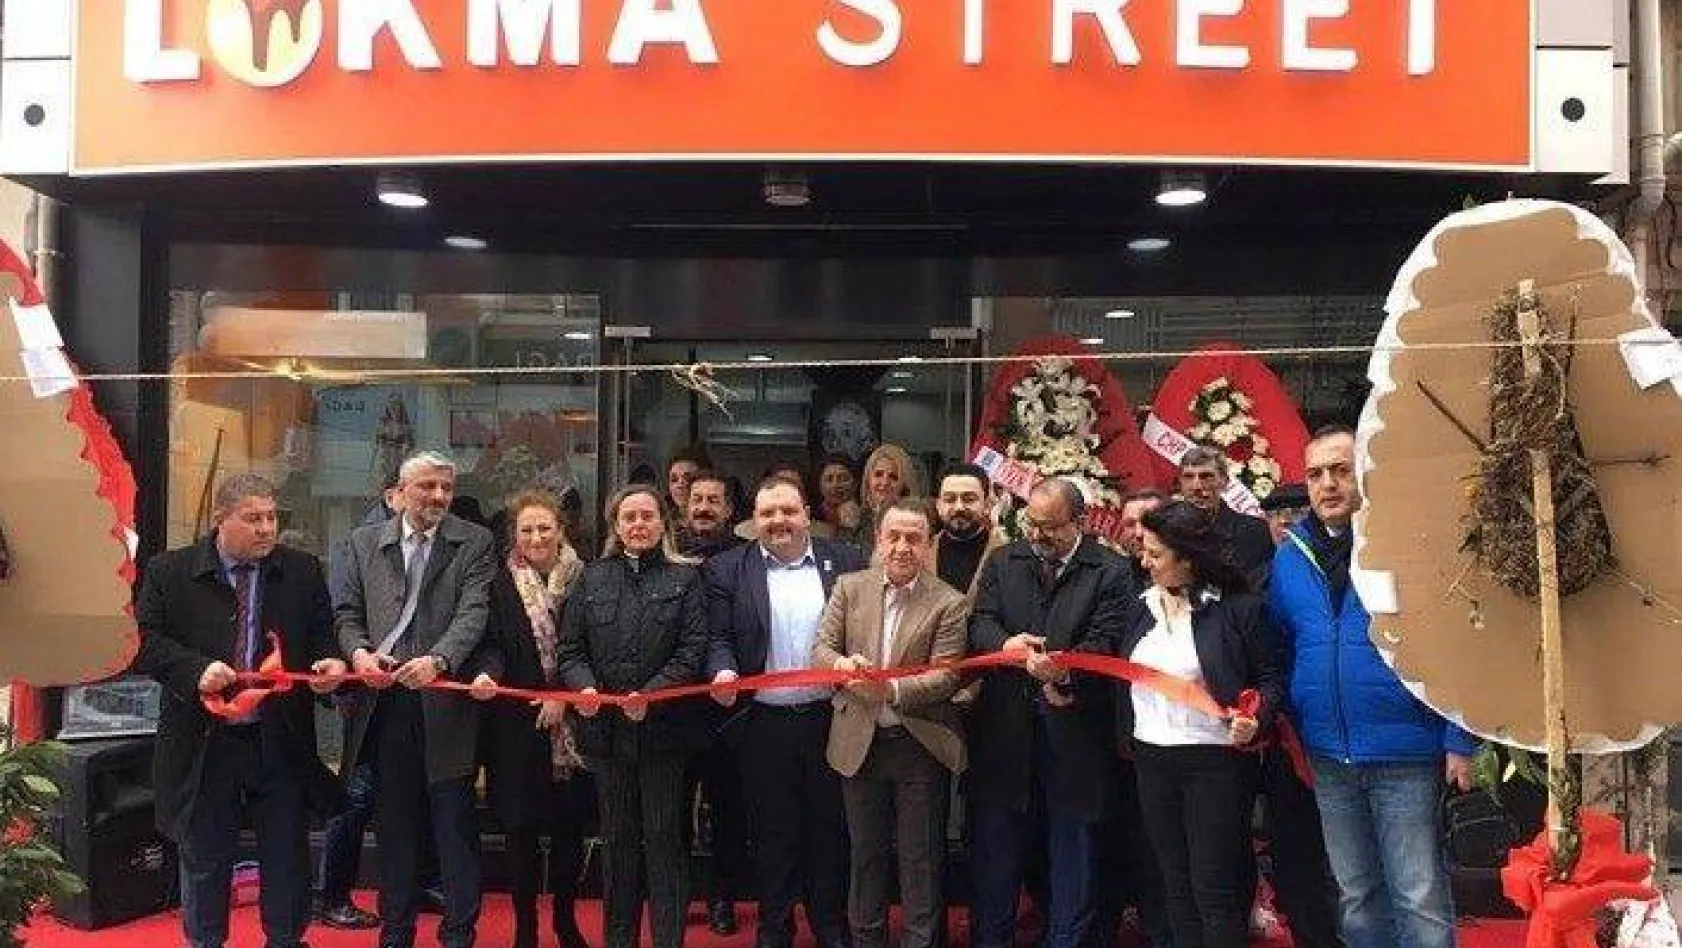 Lokma Street Açıldı